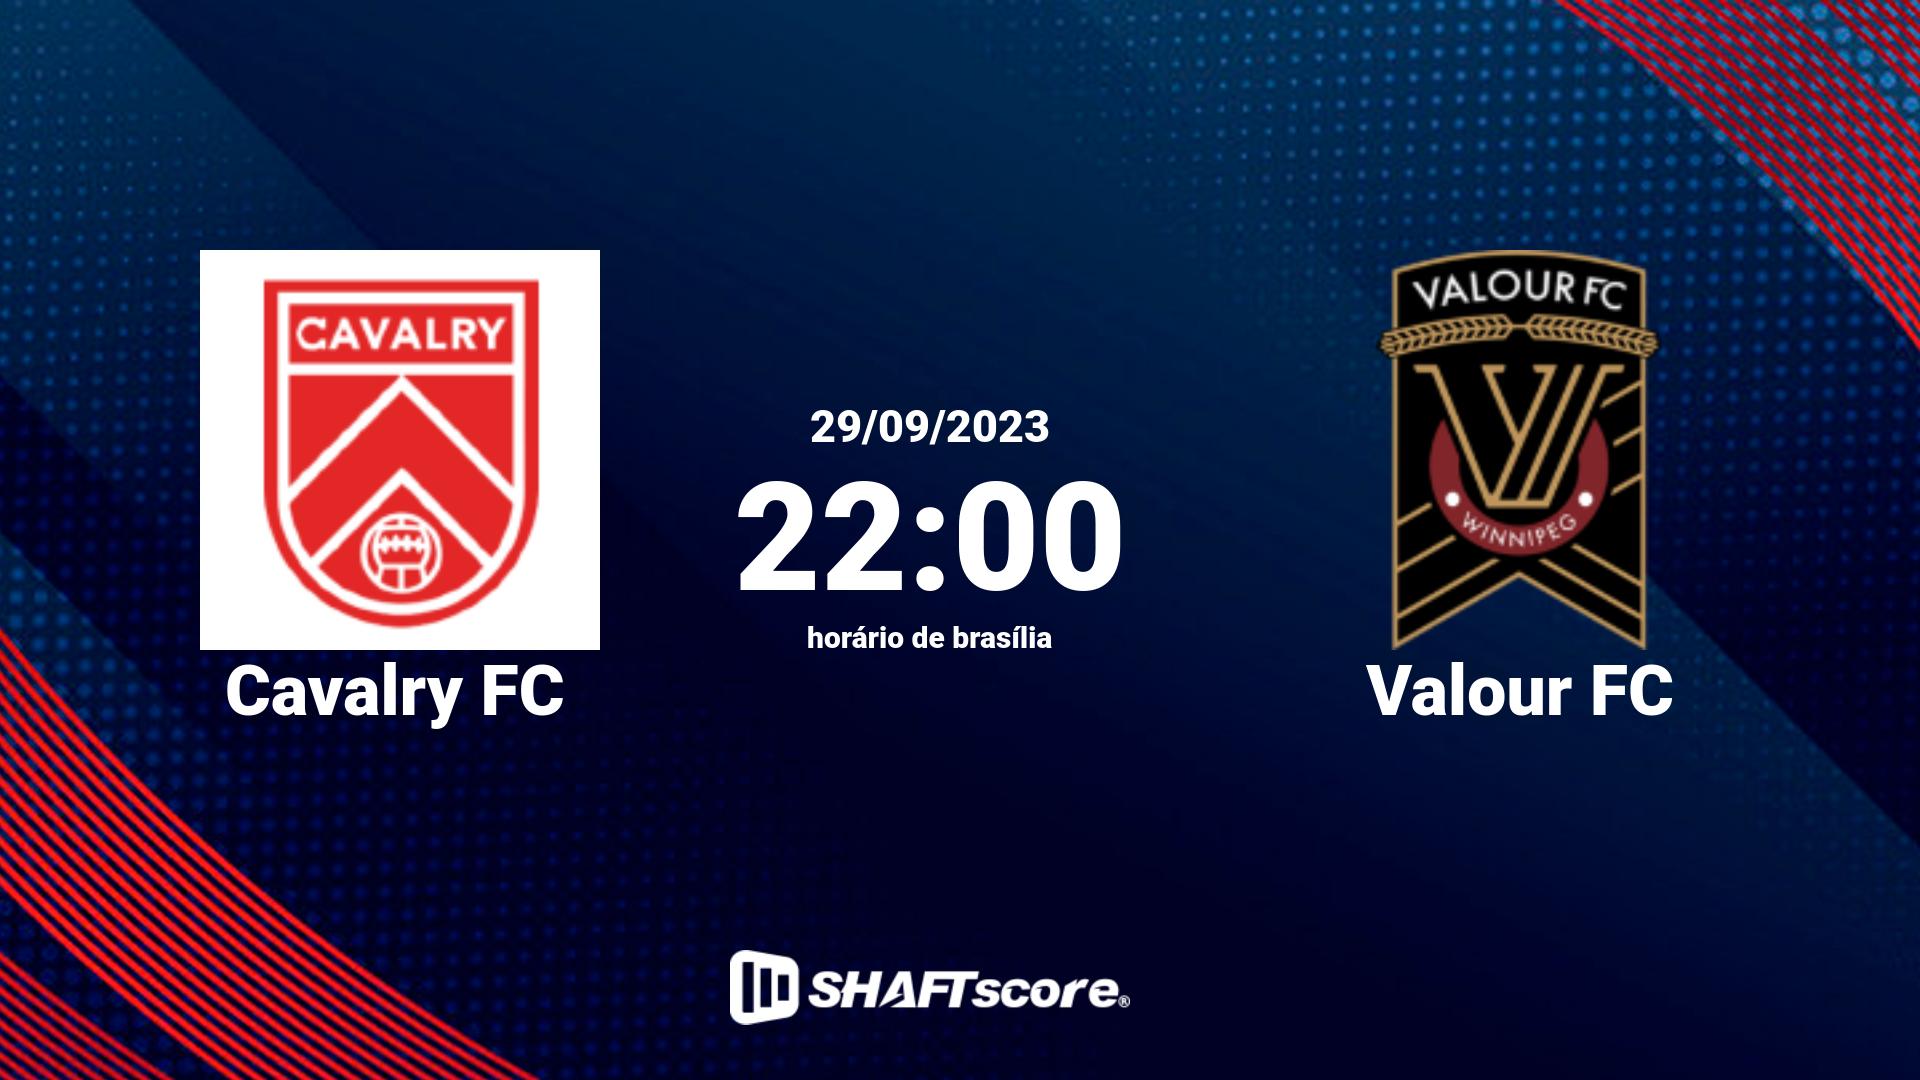 Estatísticas do jogo Cavalry FC vs Valour FC 29.09 22:00